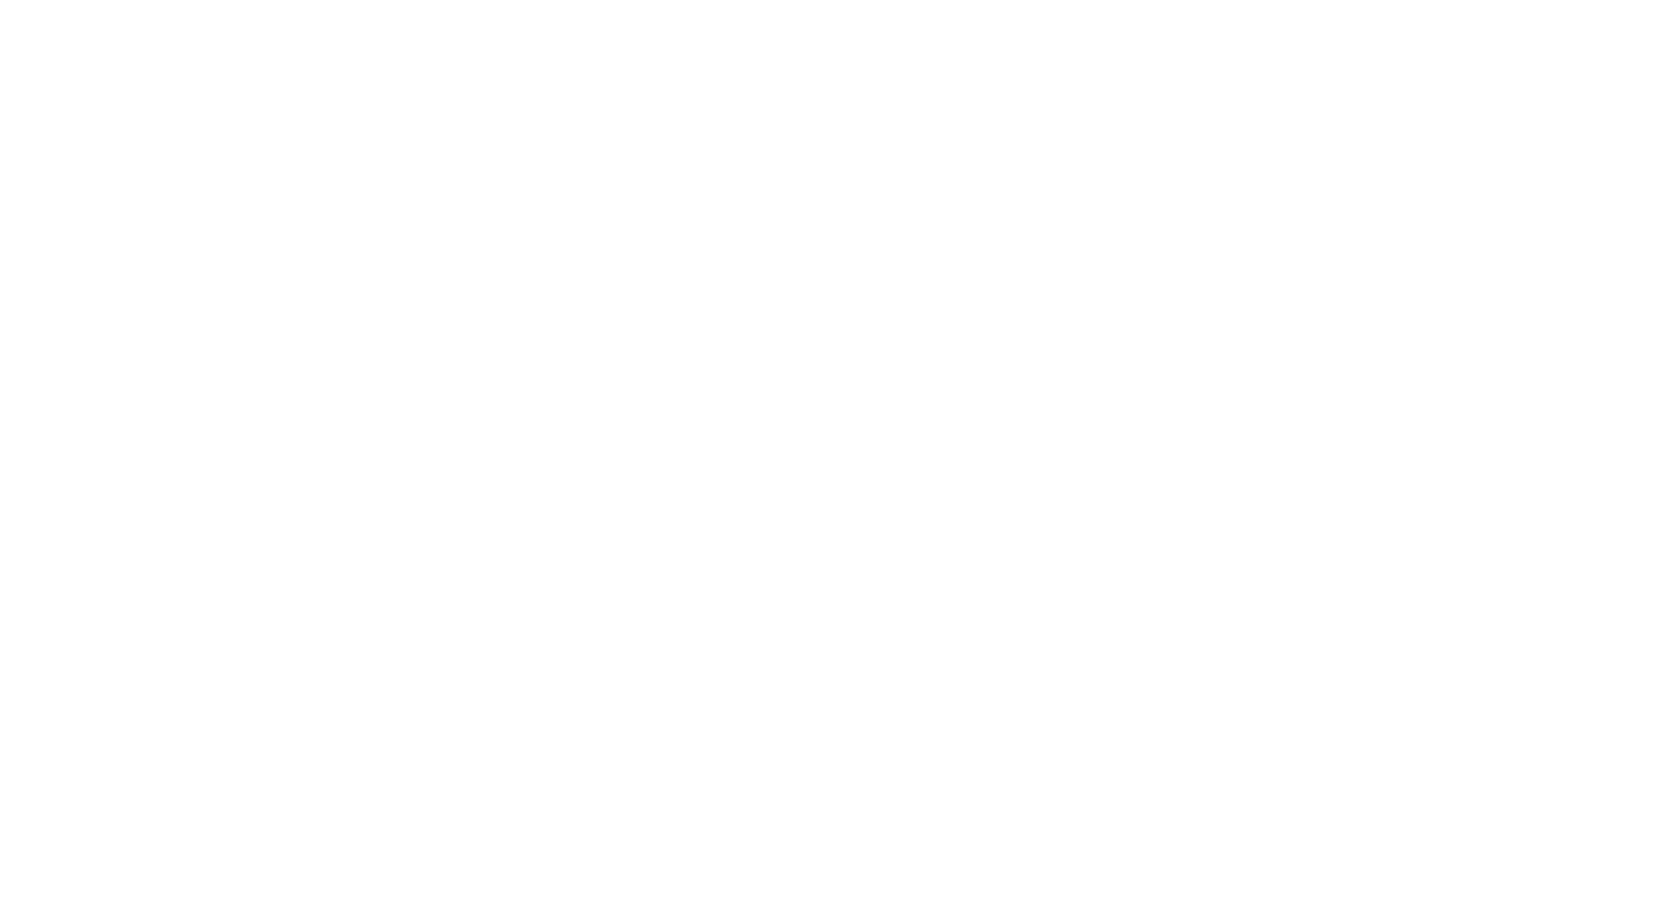 Кейс сервиса BRANDNATION - Дизайн этикетки строительных смесей. Брендинговое агентство BRANDNATION в Москве и Санкт-Петербурге. Услуги: разработка логотипа и фирменного стиля, дизайн упаковки, брендбук, ребрендинг, разработка сайта.